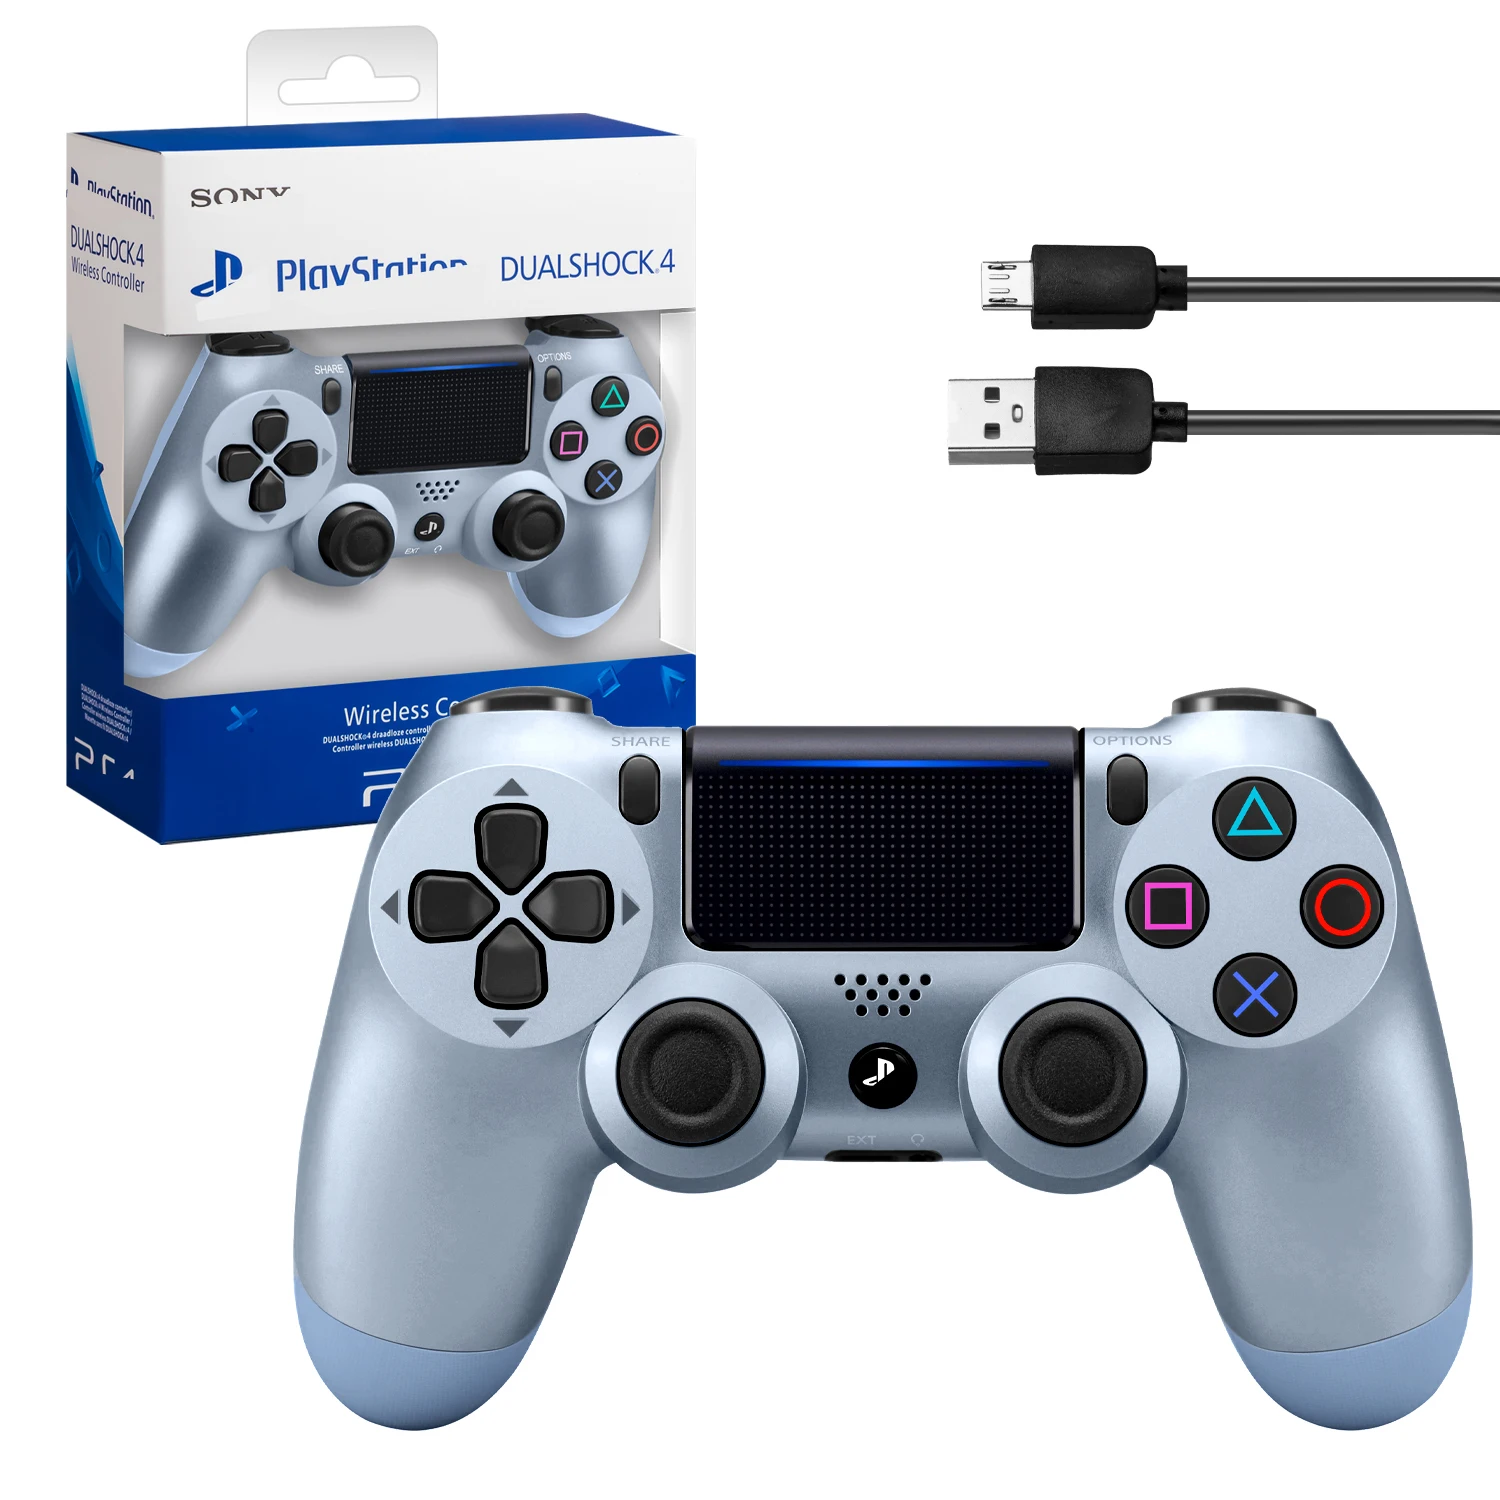 

Геймпад Игровой Джойстик Для Приставки PS4 DualShok 4 для ПК/PS4, серый металлик